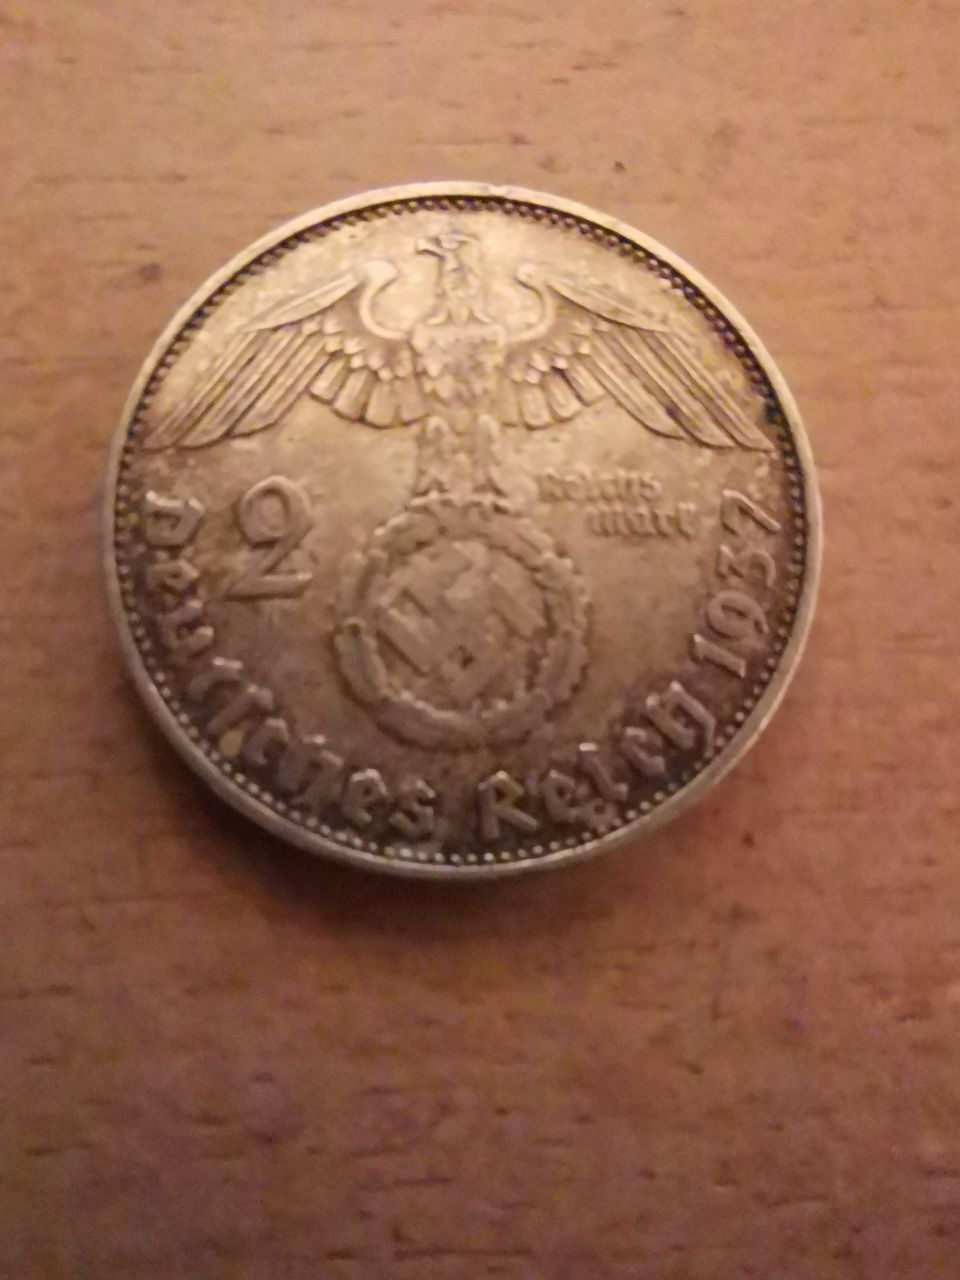 2 Deutsches Reichmark 1937 rok (2 Reich marki)